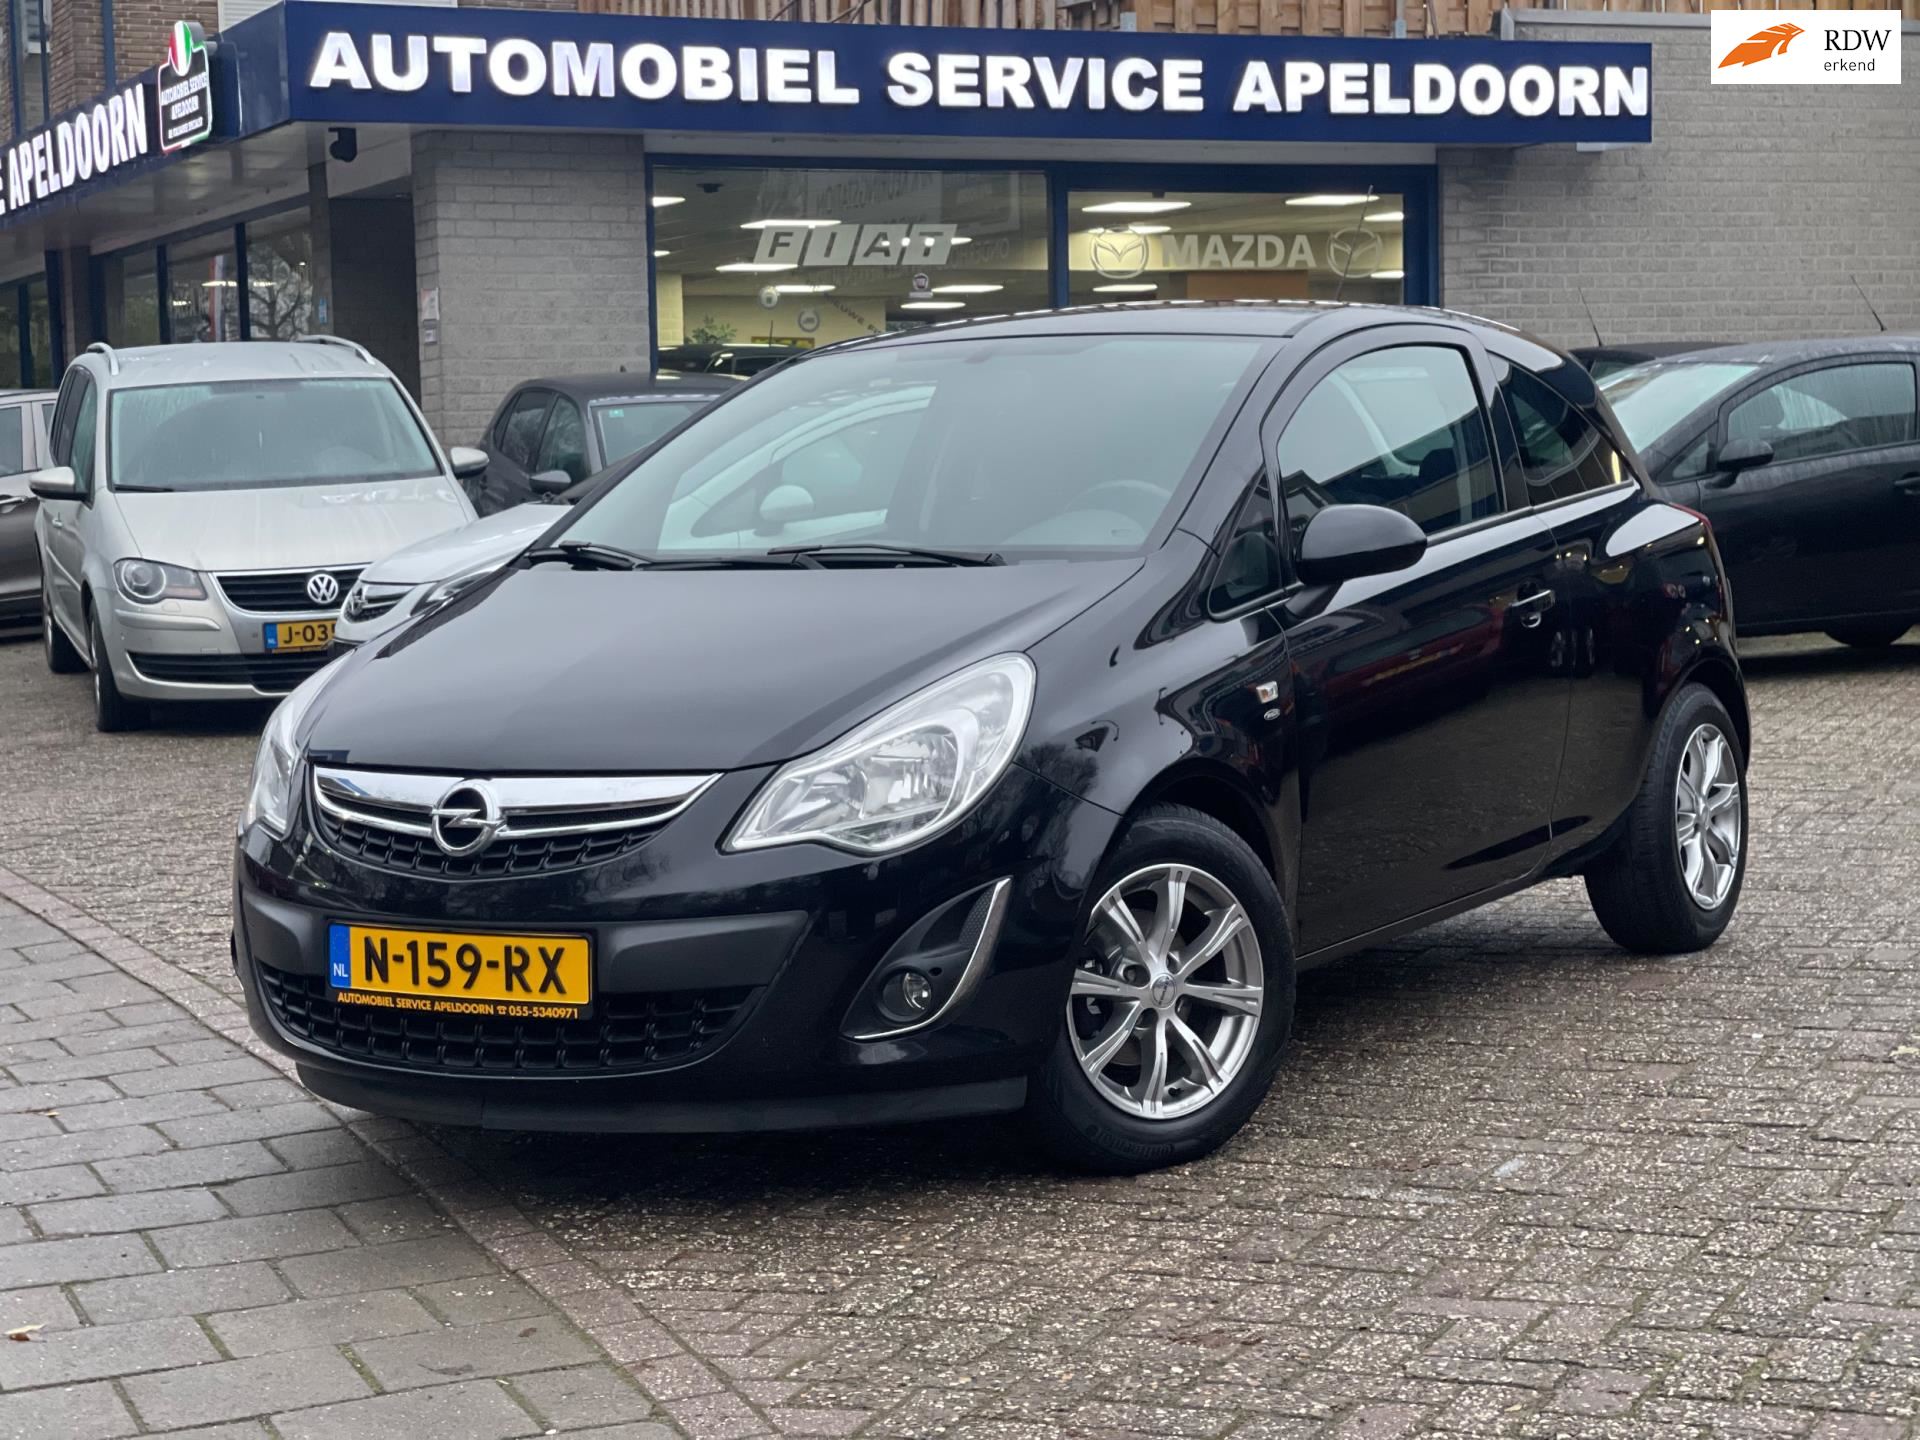 Opel Corsa occasion - Automobiel Service Apeldoorn